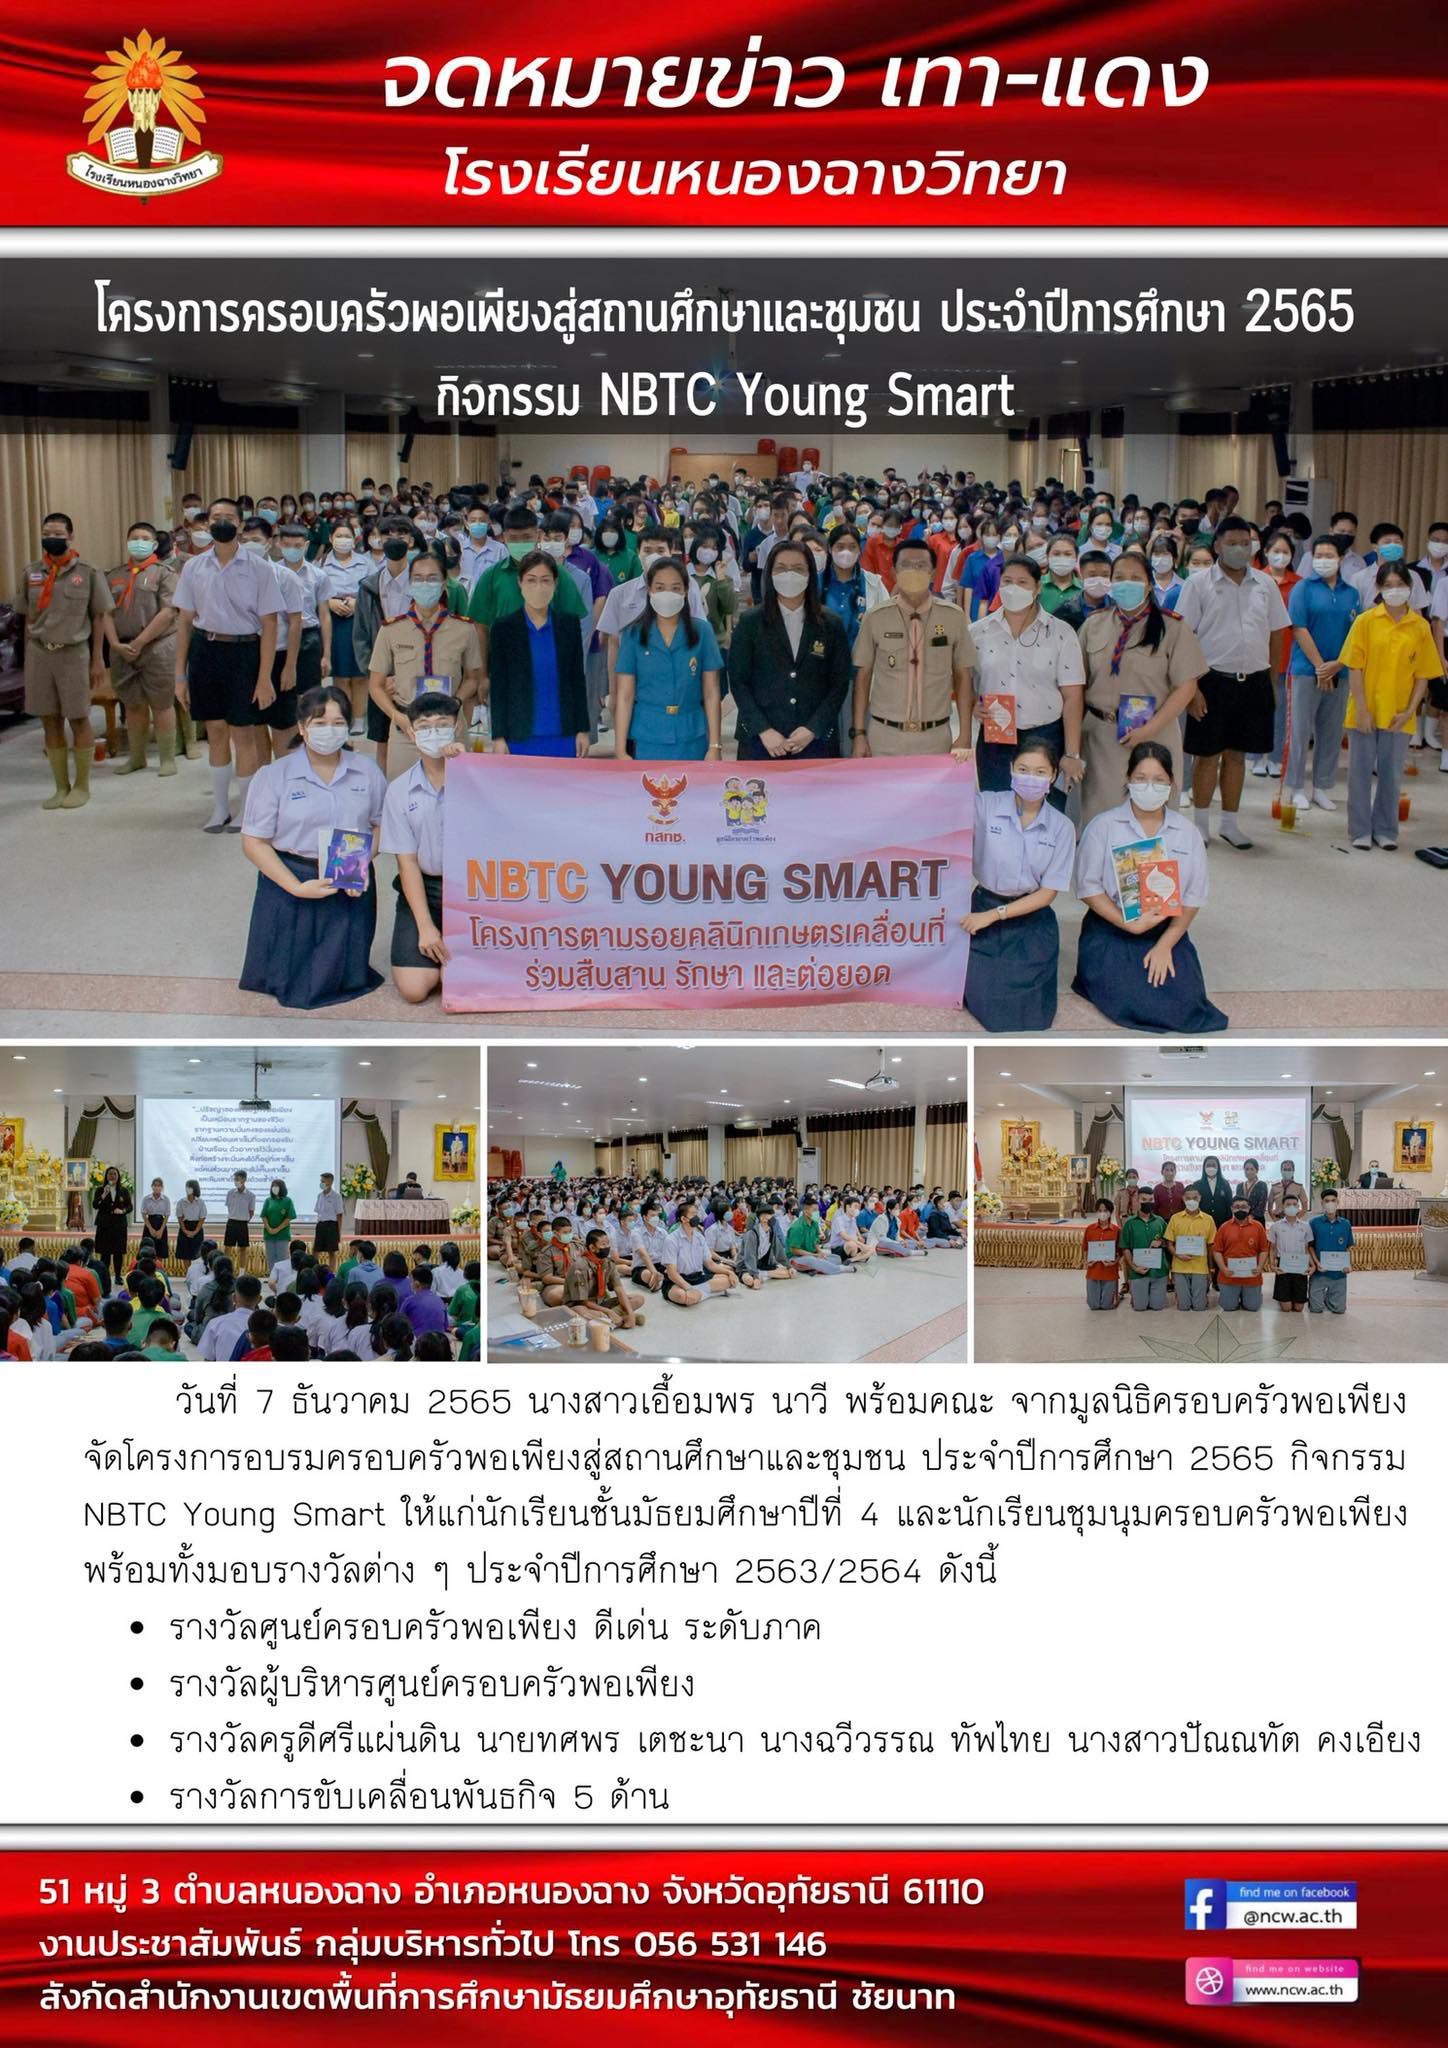 โครงการครอบครัวพอเพียงสู่สถานศึกษาและชุมชน ประจำปี 2565 กิจกรรม  NBTC Young Smart